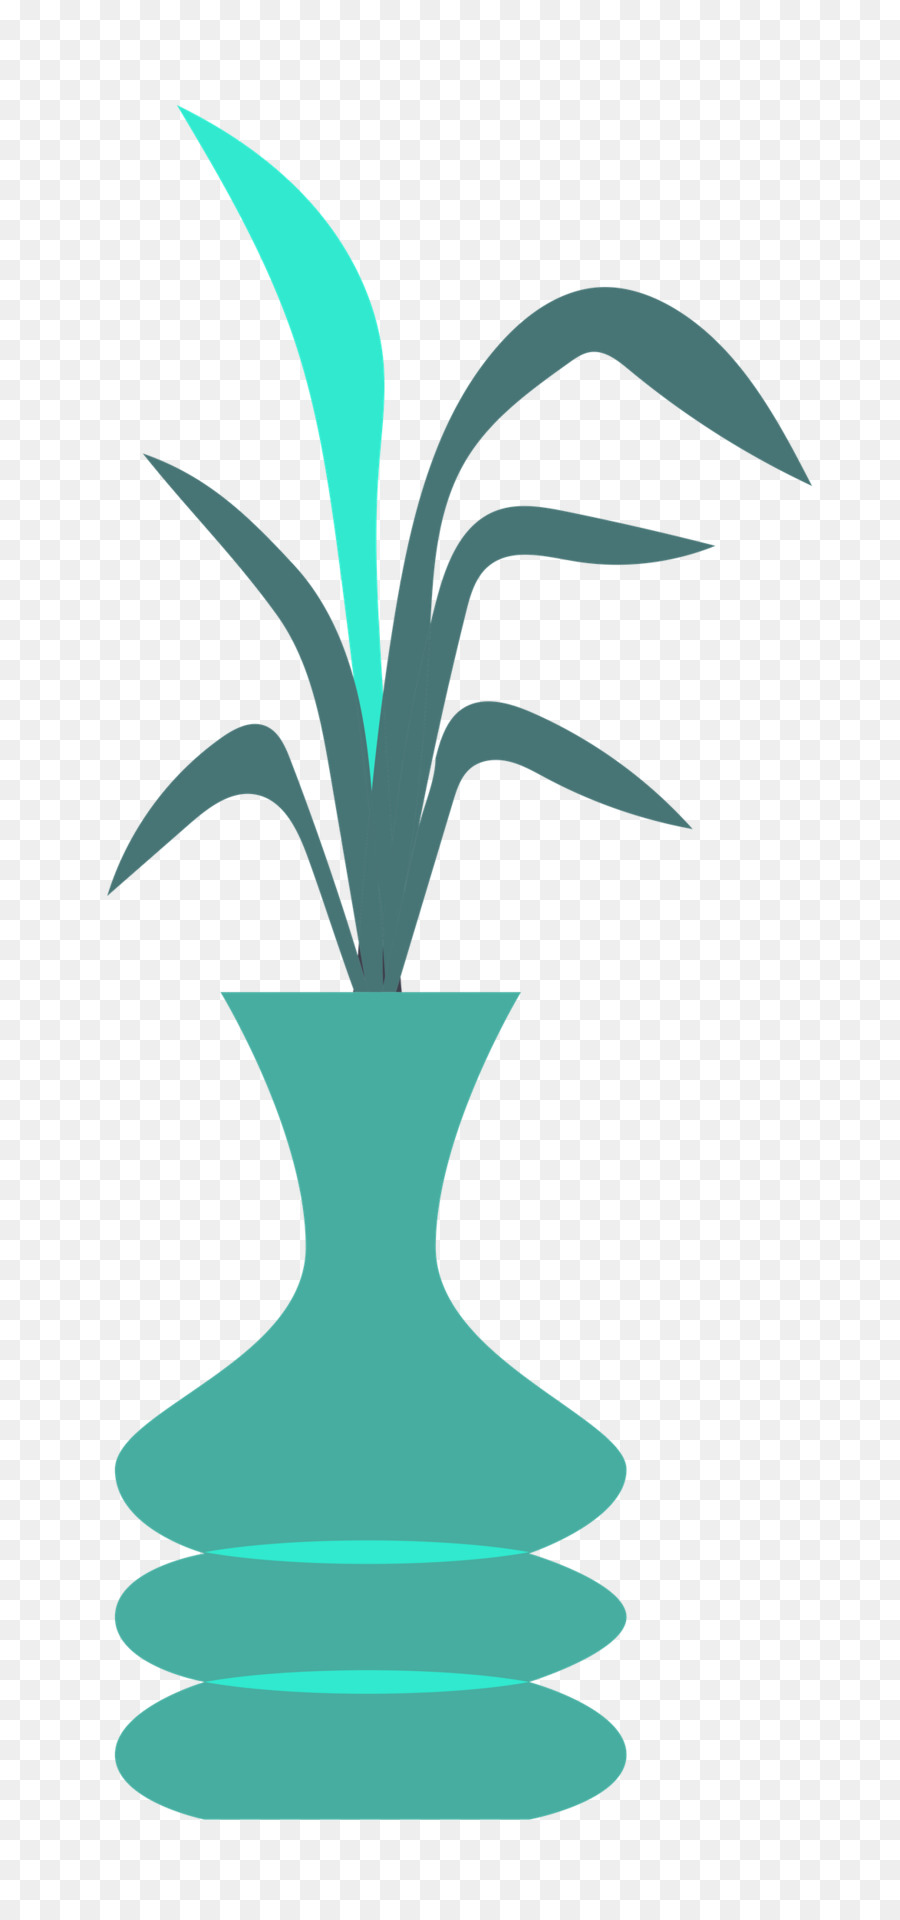 Blattpflanze-Stamm-Linien-Baum-Teal - 